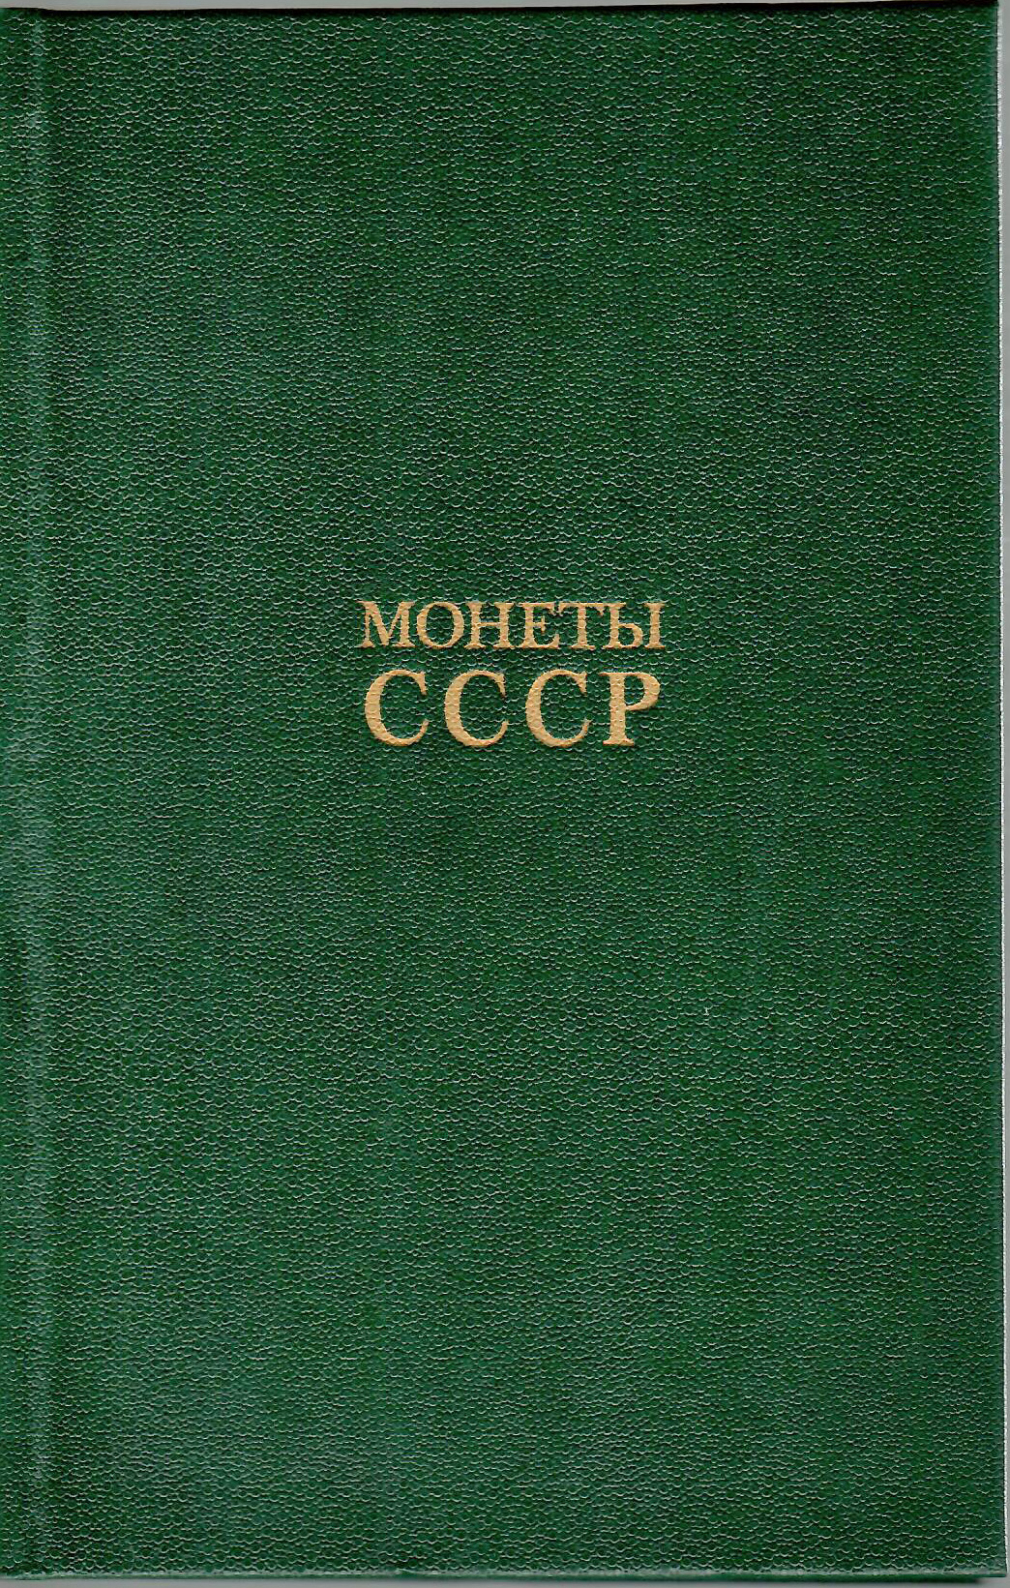 Монеты СССР. А.А.Щелоков 22-19